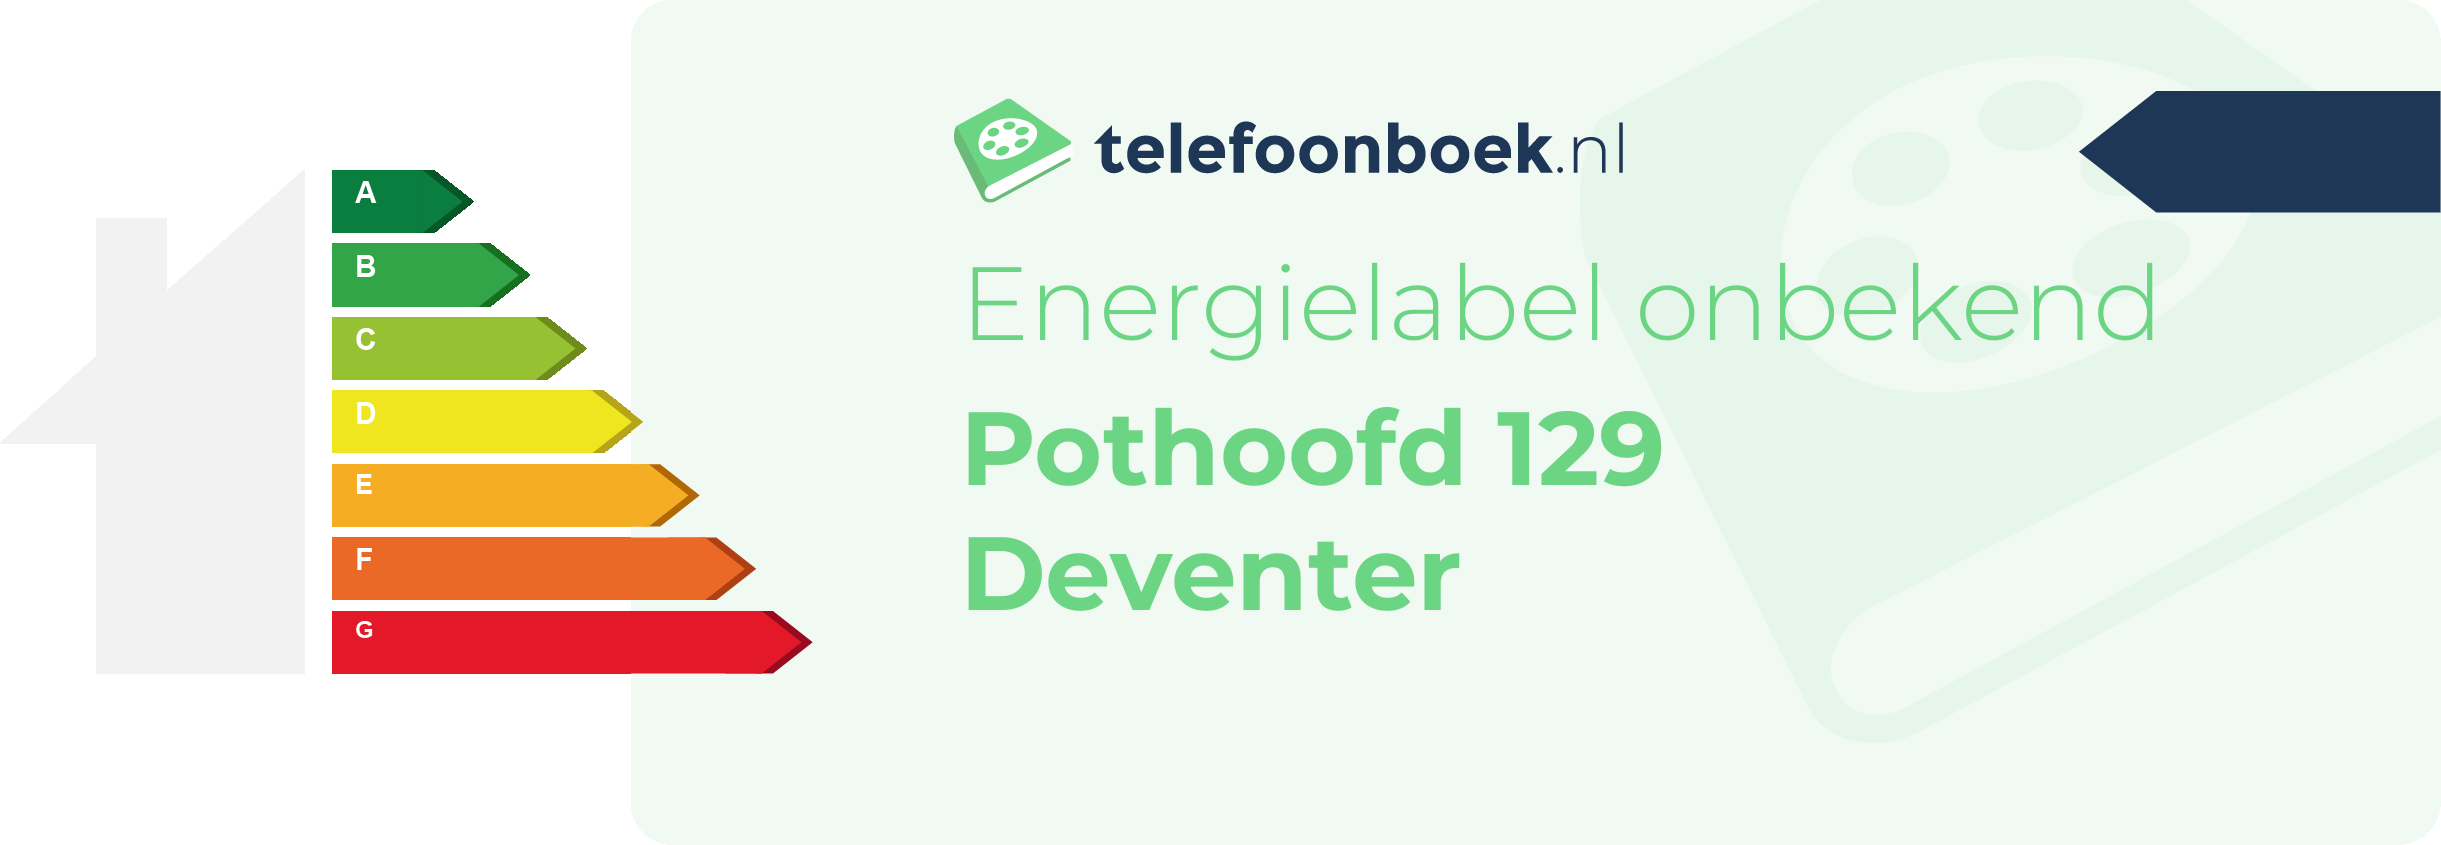 Energielabel Pothoofd 129 Deventer